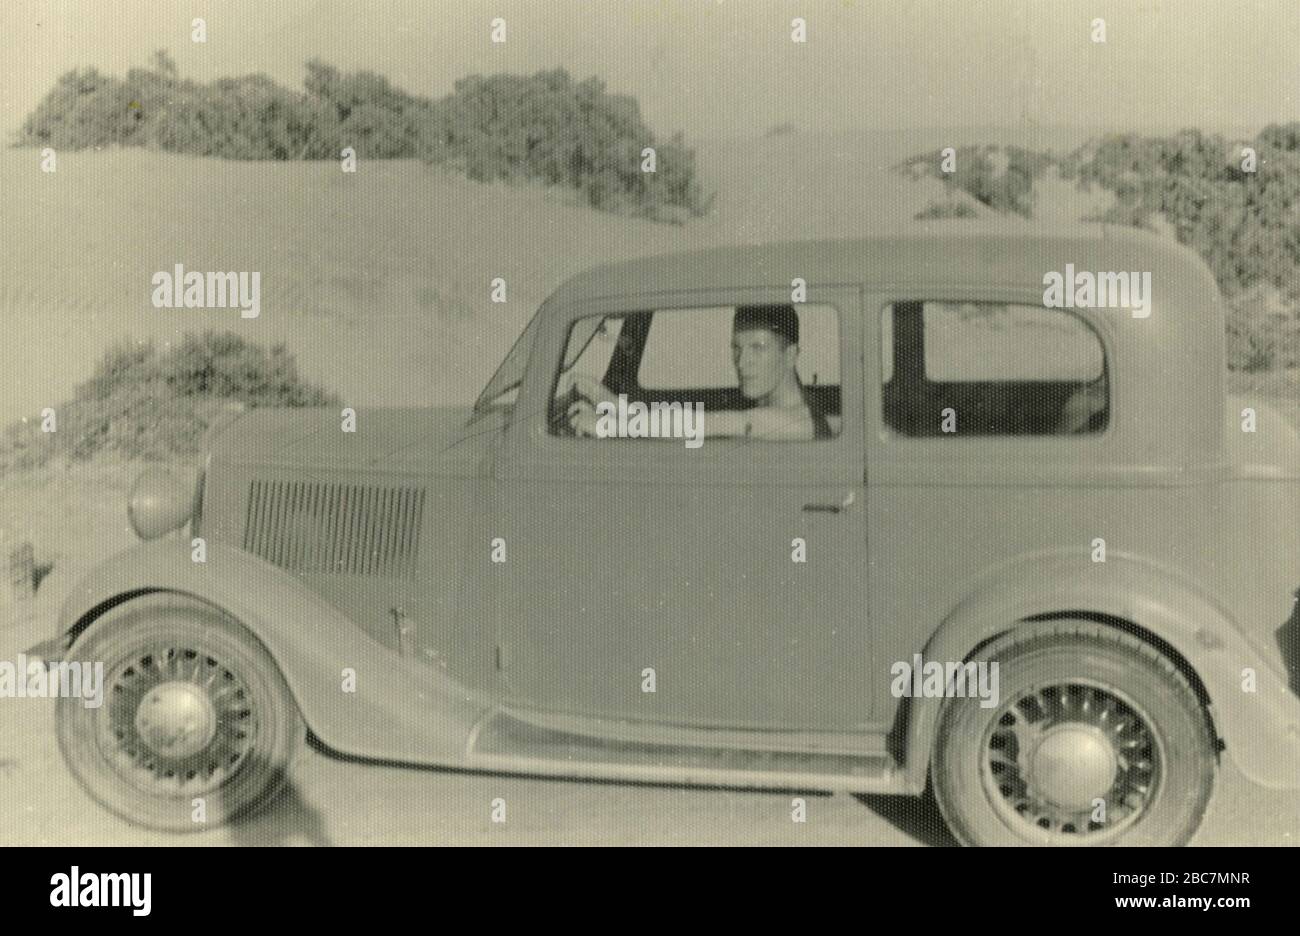 Homme conduisant une voiture Balilla FIAT dans le désert, Afrique de l'est colonies italiennes, Gurgussum Massawa, Erythrée 1938 Banque D'Images